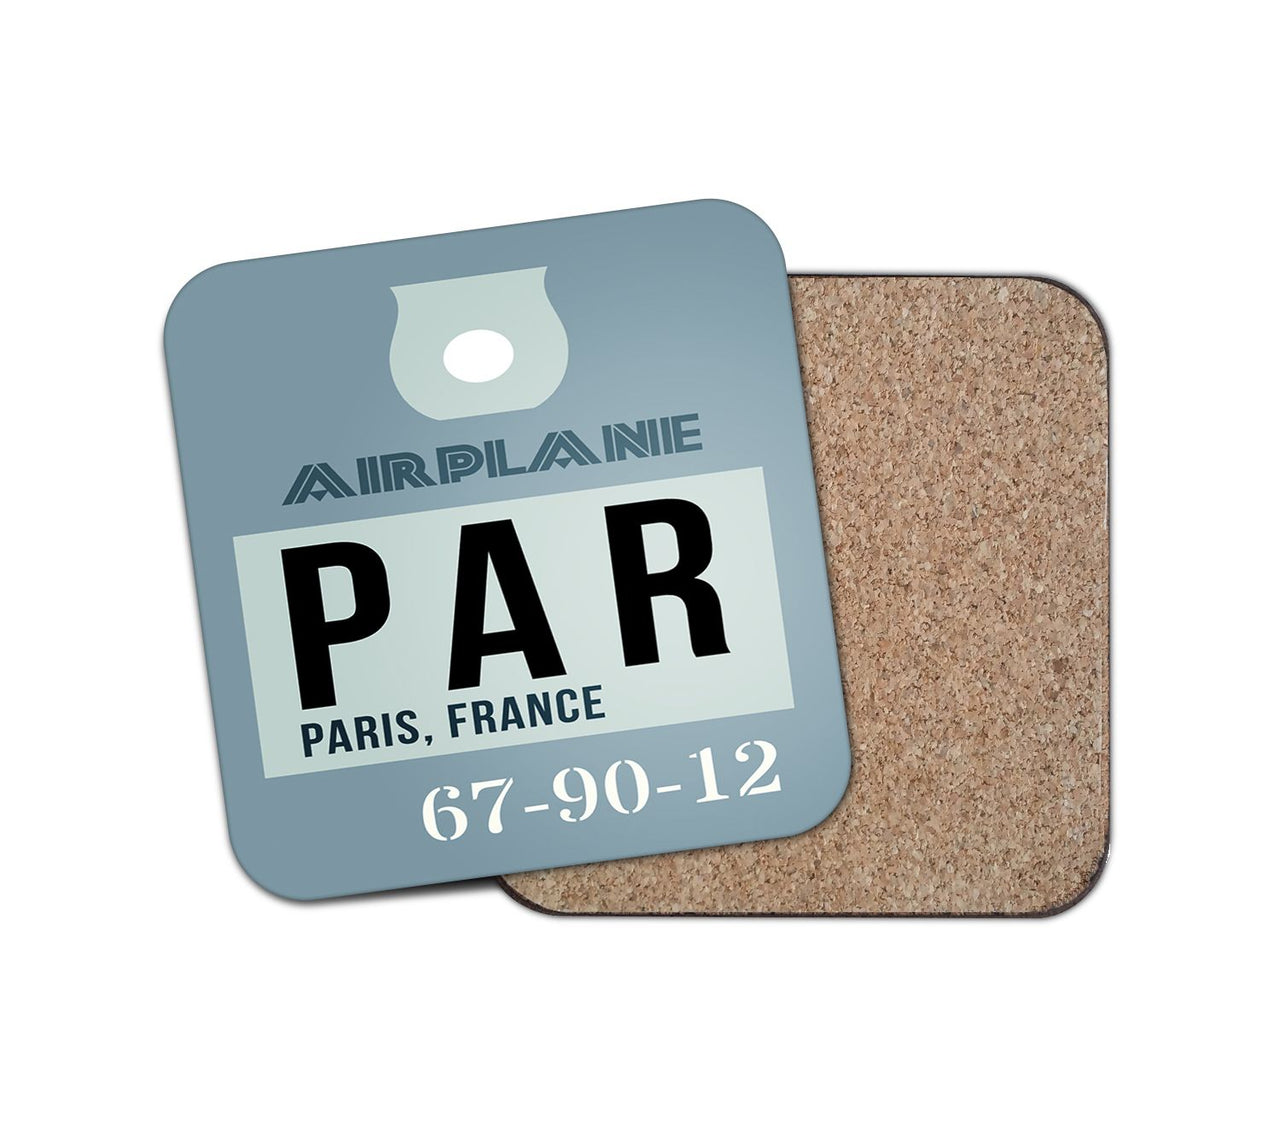 PAR - Paris France Luggage Tag Designed Coasters